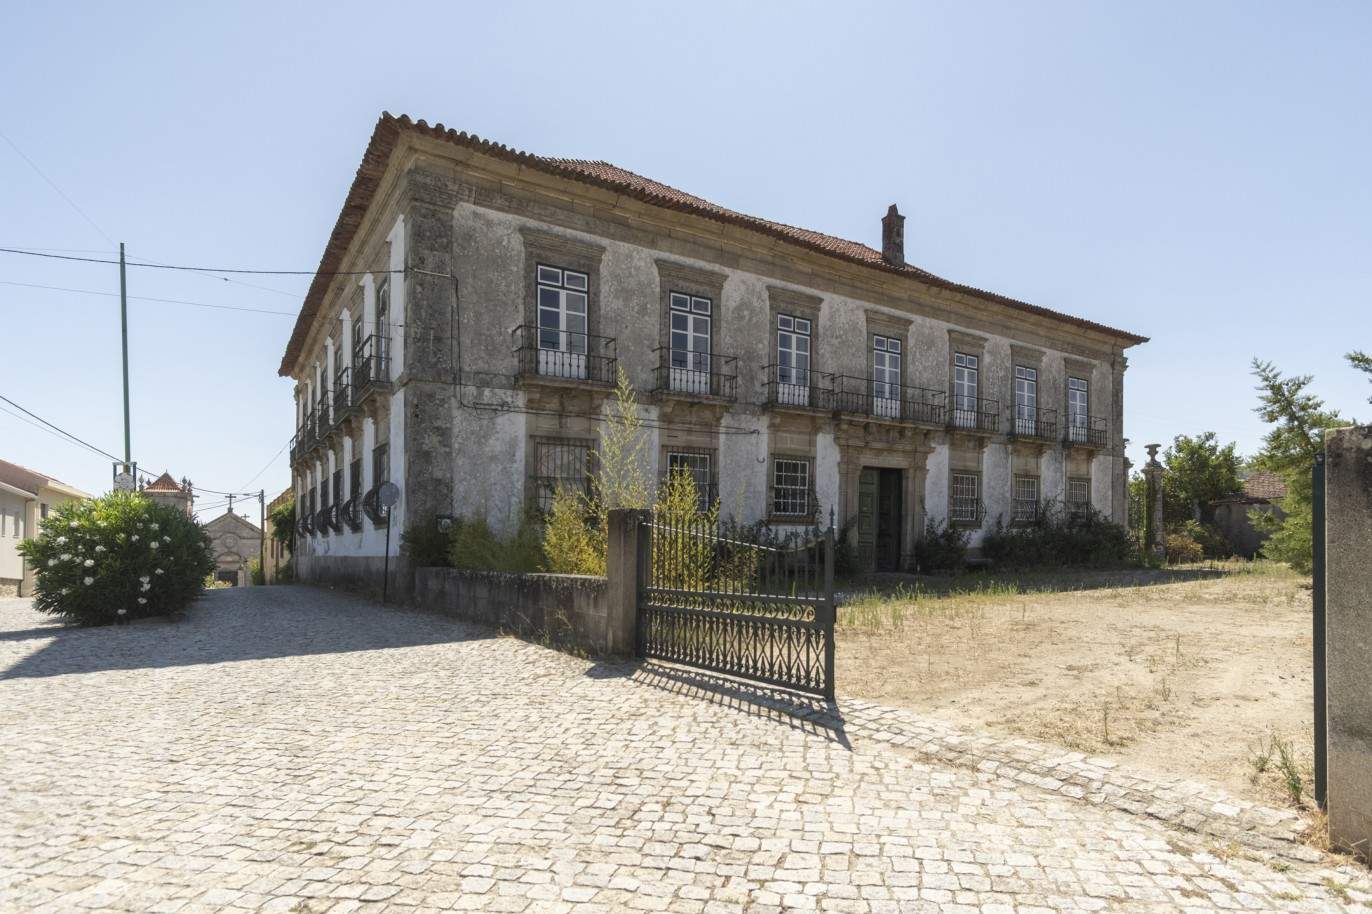 Vente : restauration du Palacete avec jardins et fontaine centenaire, à Lamego, Valeé du Douro, nord du Portugal_207357